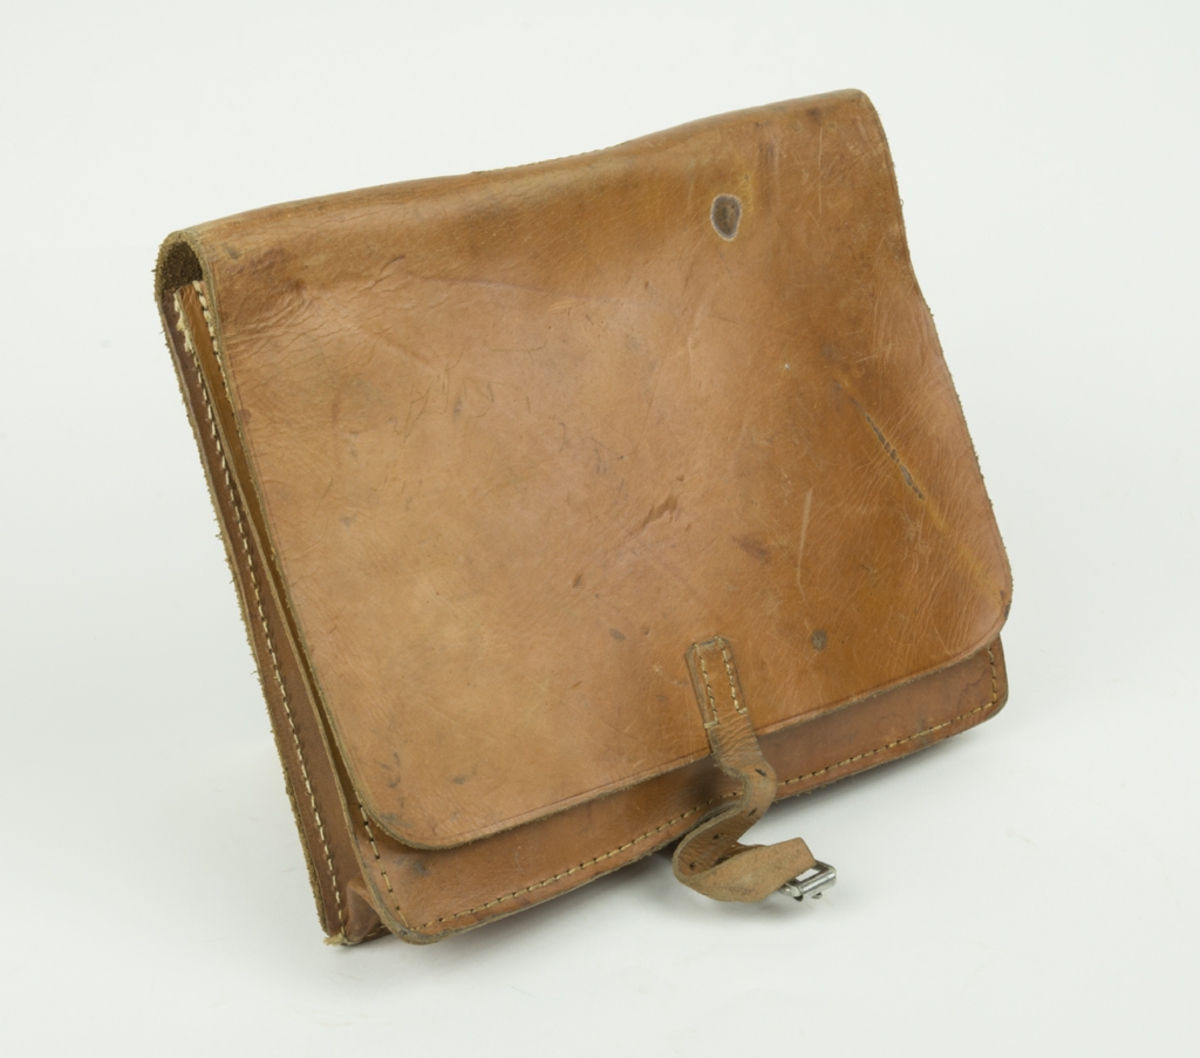 Väska för trådsignalpersonal. Läderväska med axelrem. Läderväskan innehåller Burk med spikmärlor, eltape, plattång med läderband, skruvmejsel mm.